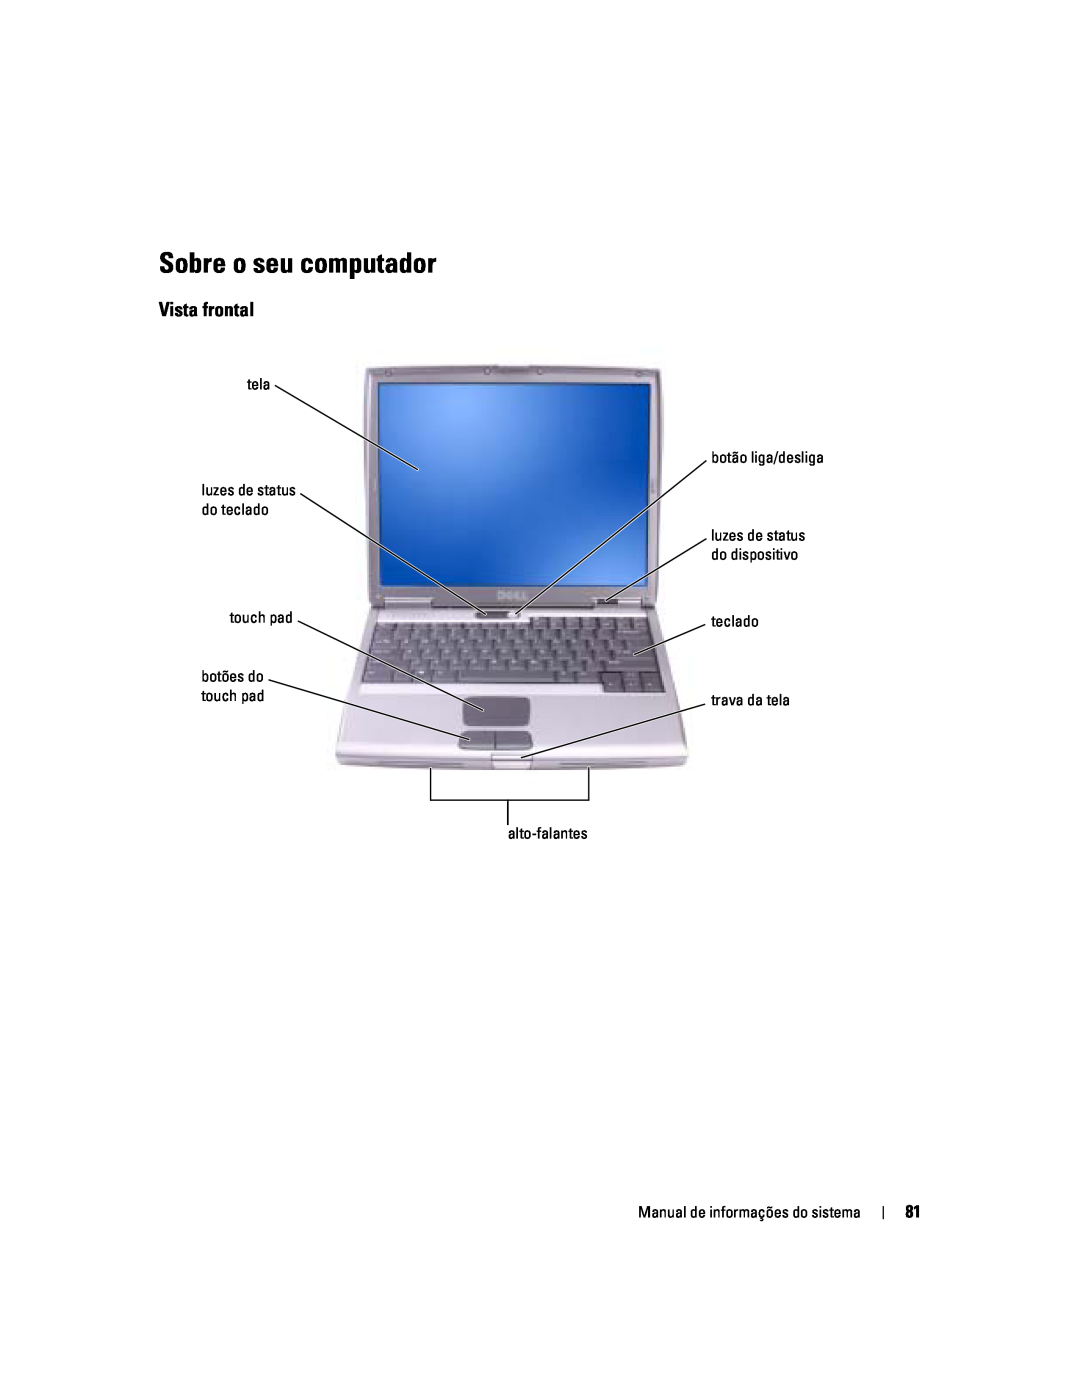 Dell D505 manual Sobre o seu computador, Vista frontal 